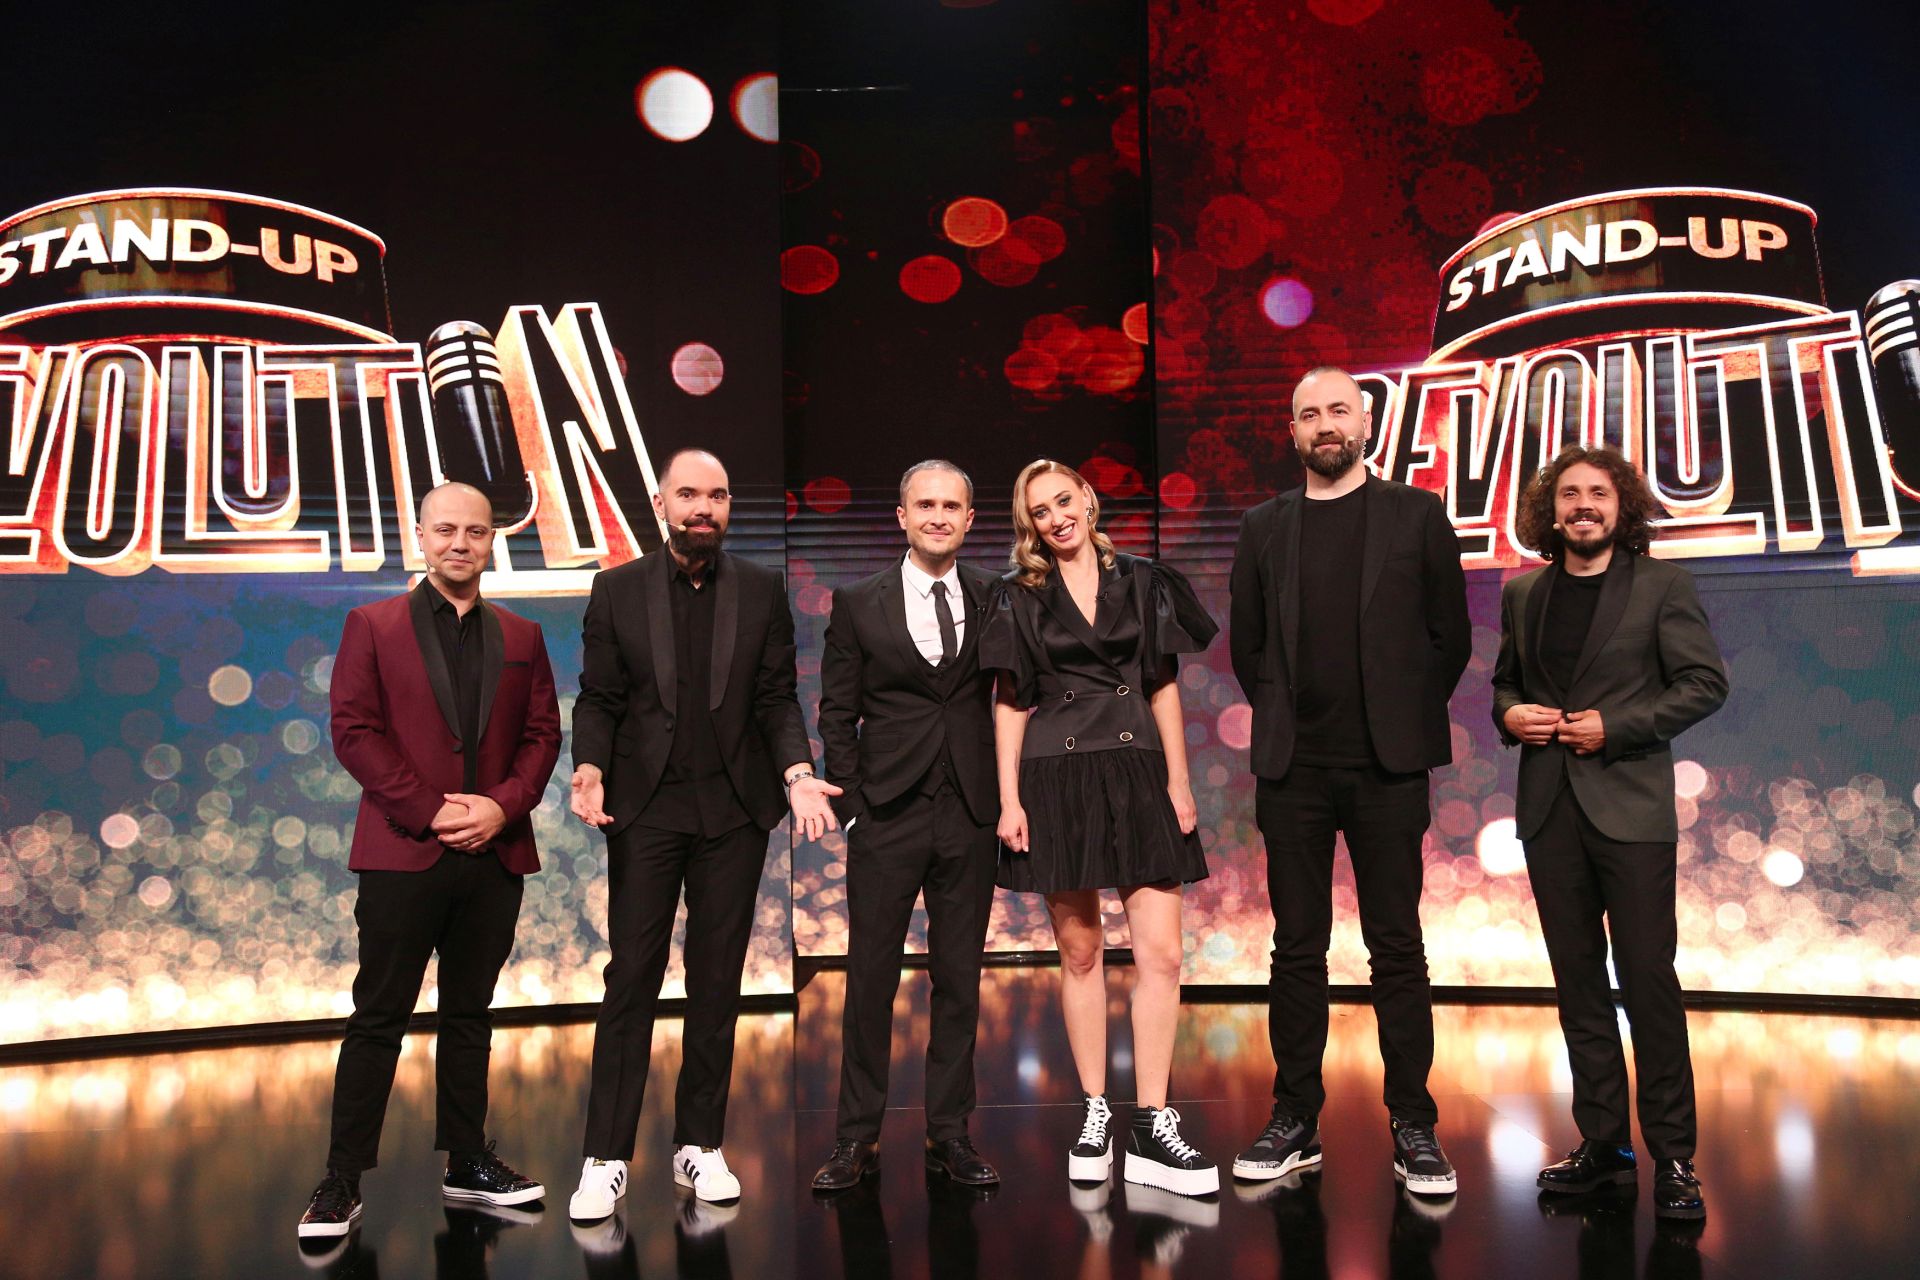 În seara aceasta, Stand-Up Revolution își dezvăluie câștigătorul primului sezon Ei sunt cei zece finaliști care se vor întrece să cucerească publicul de acasă